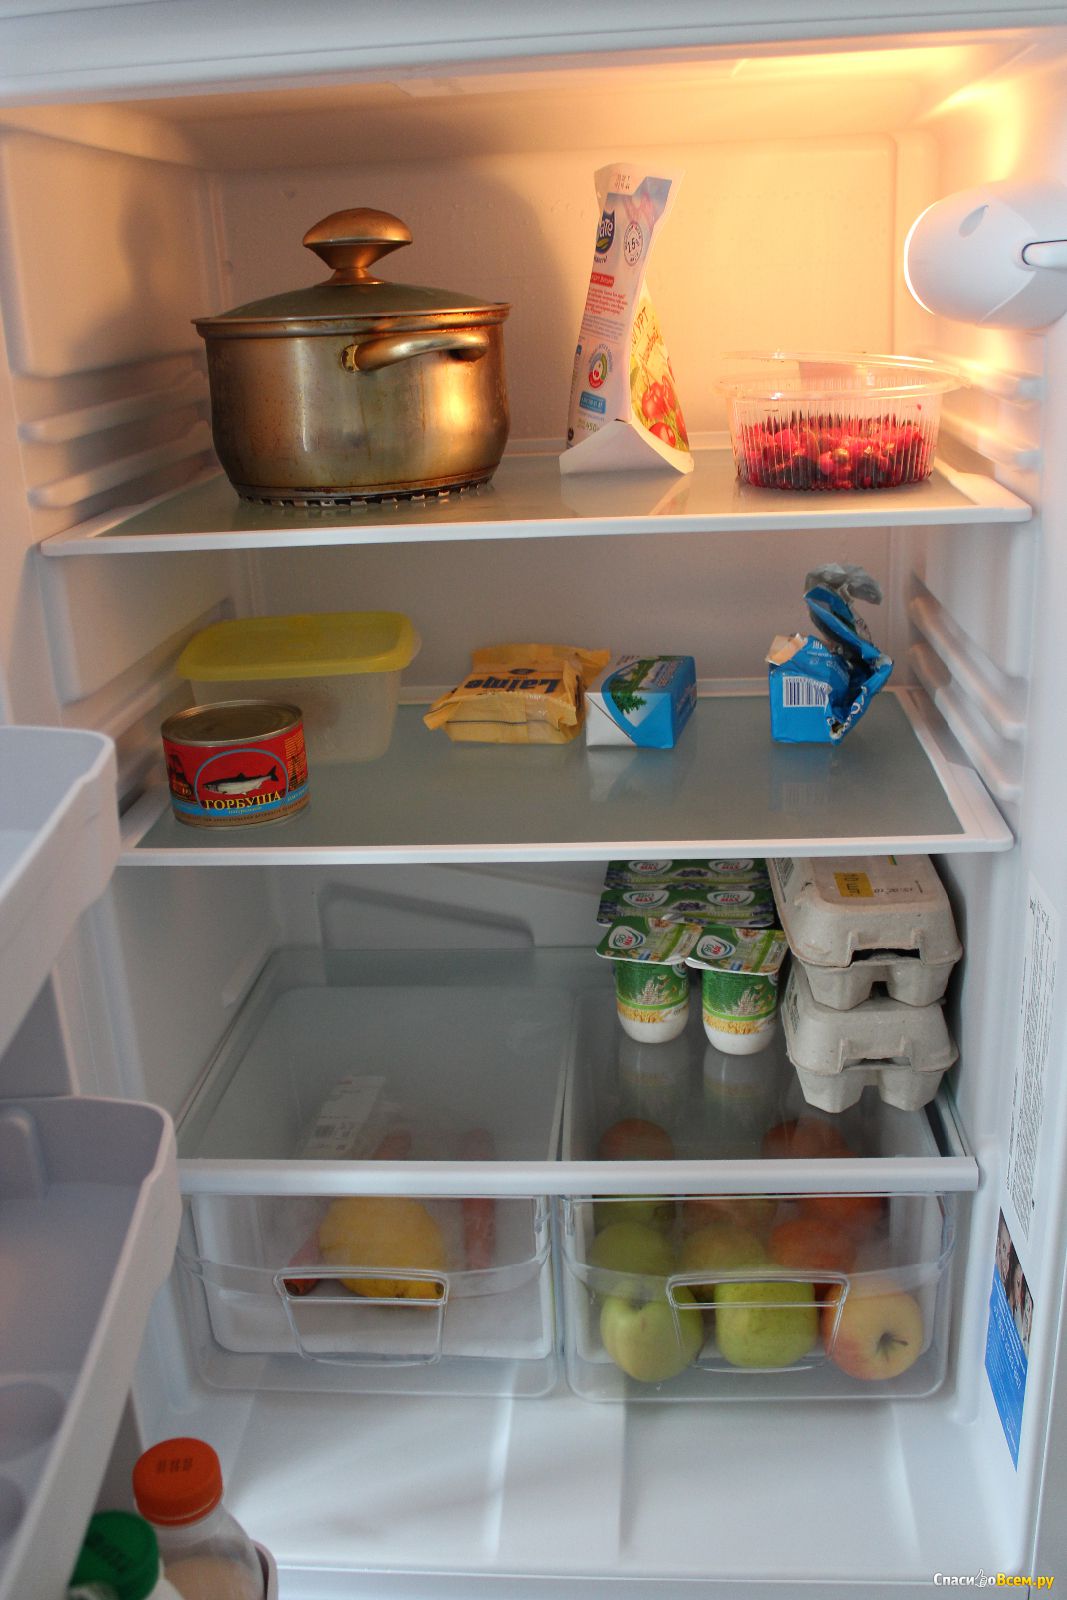 крепление для полок в холодильнике